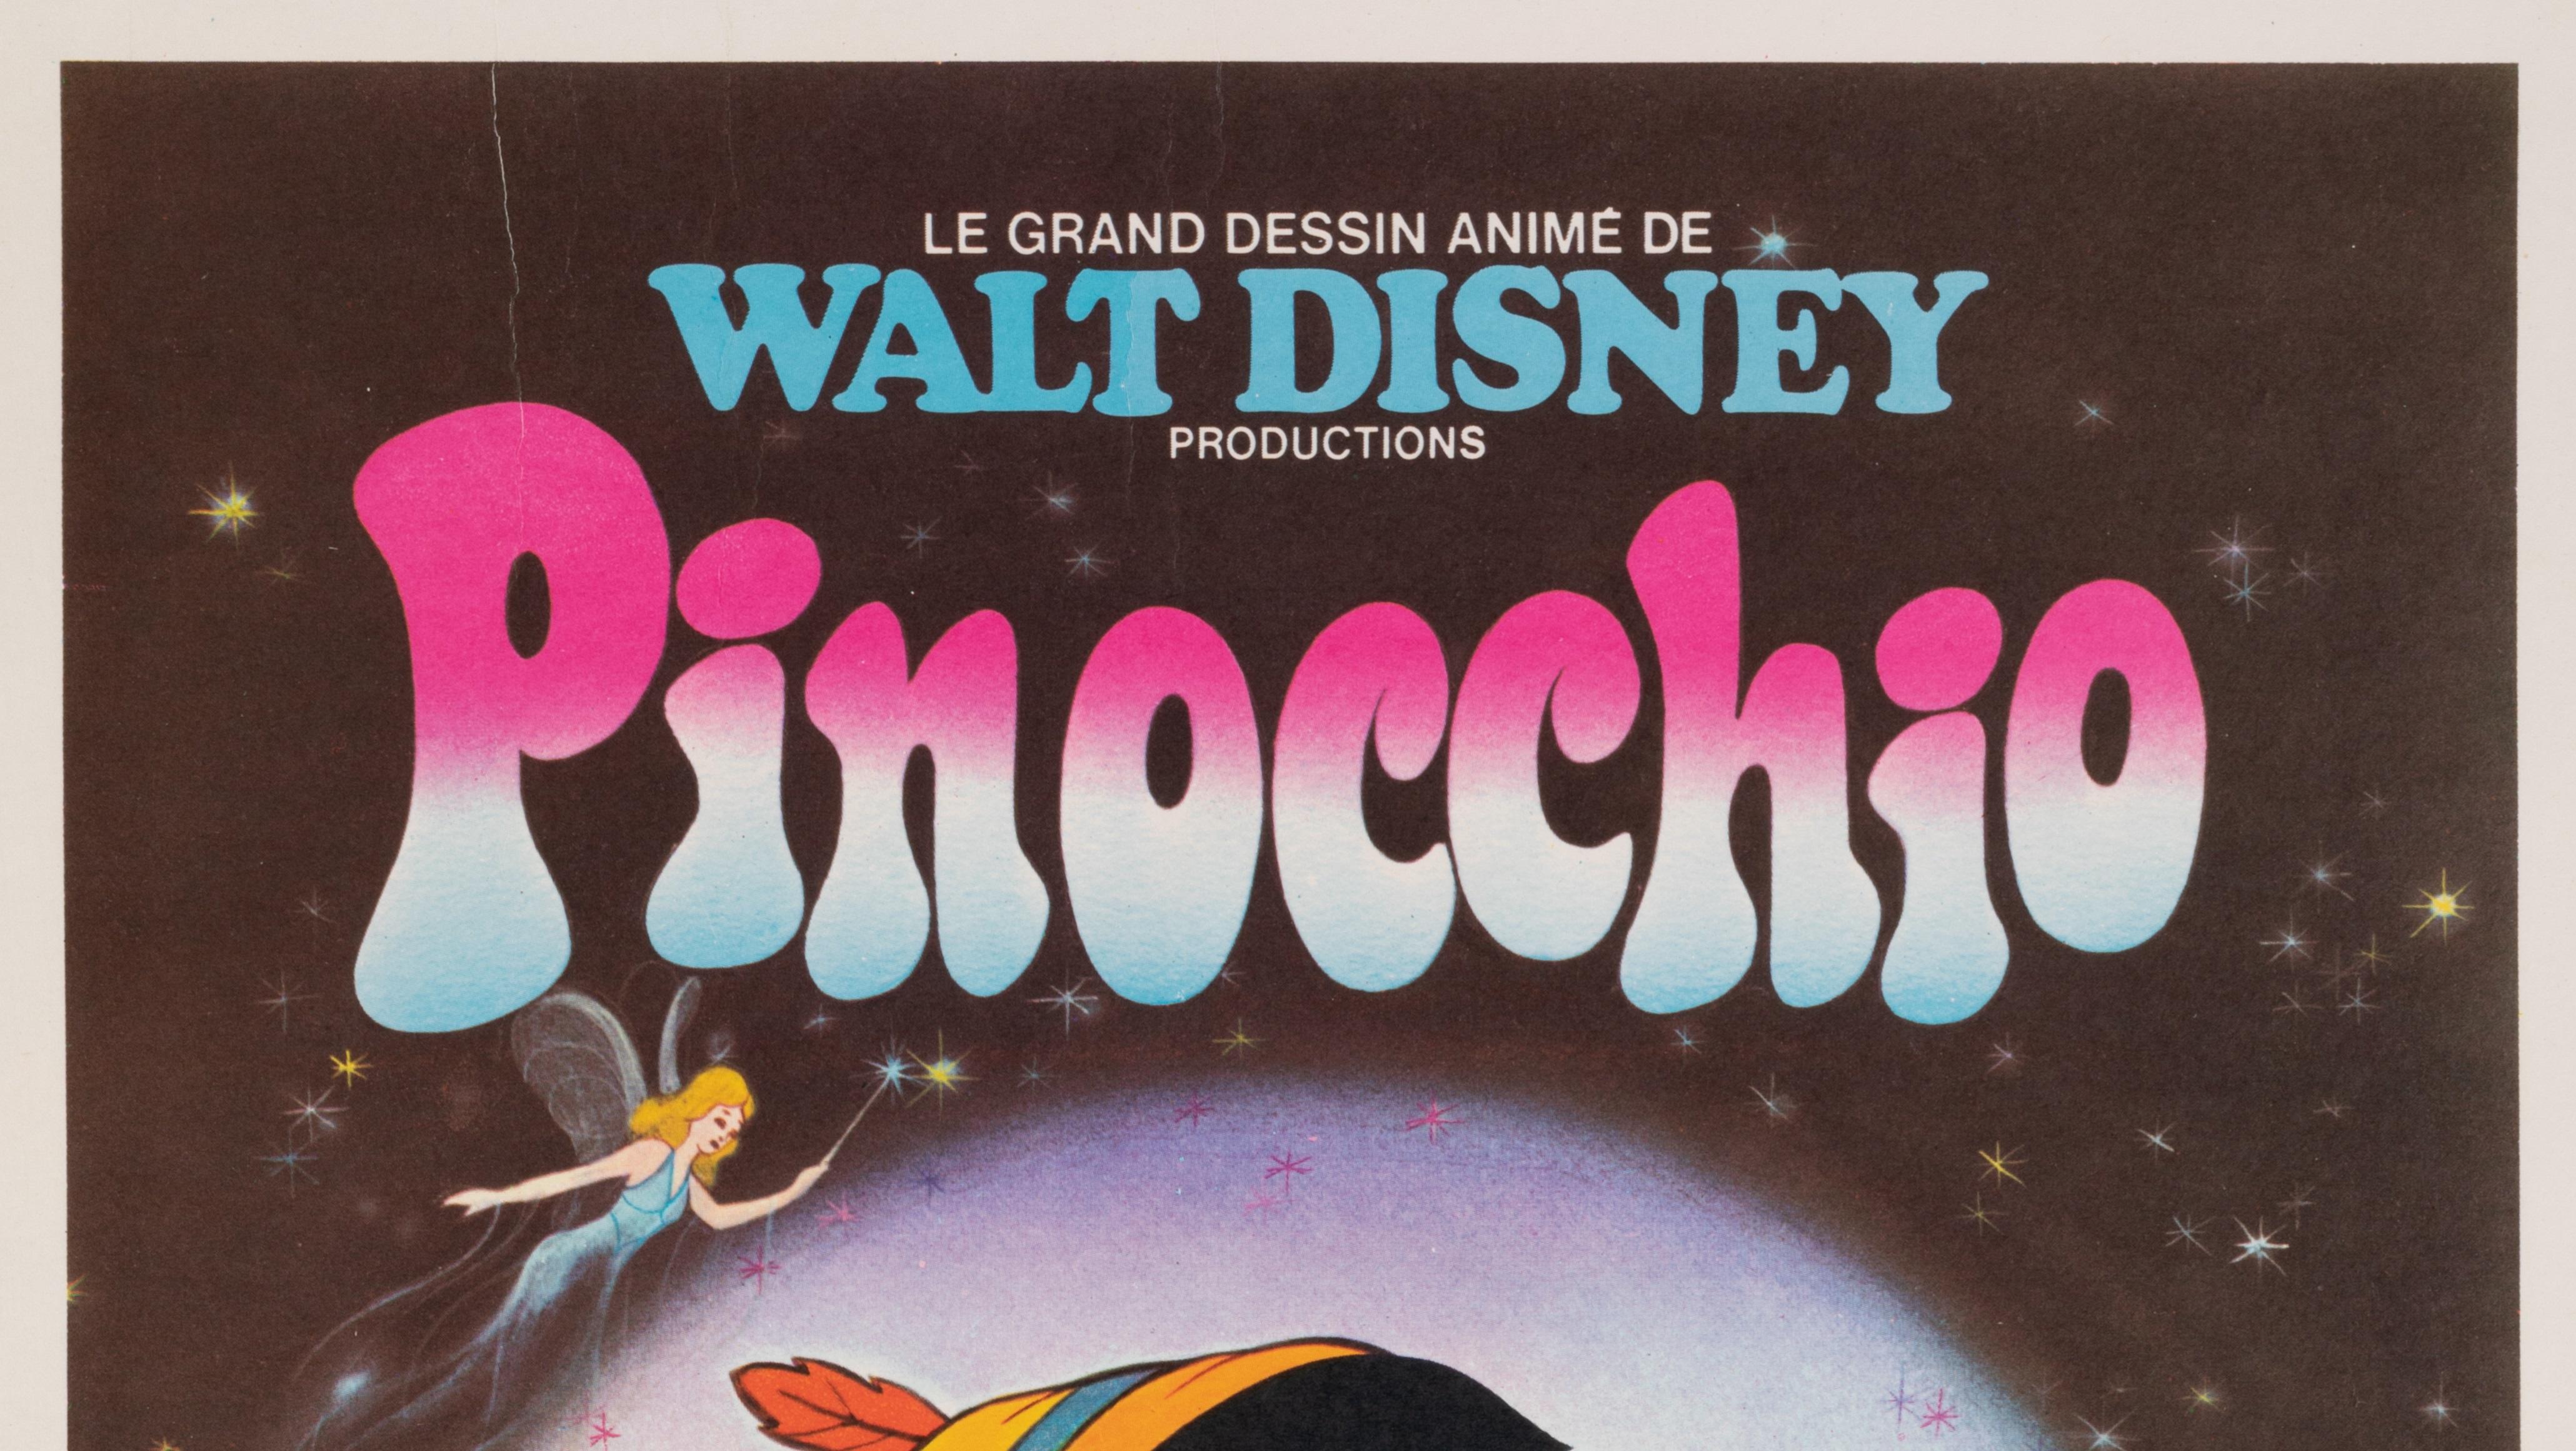 Affiche de Walt Disney pour la promotion du dessin animé Pinocchio, datant de 1980.

Artistics : Anonyme
Titre : Pinocchio
Date : circa 1980
Taille (l x h) : 15.7 x 21.7 in / 40 x 55 cm
Imprimeur : Ets St martin Imp, 92 Asnieres
Matériaux et